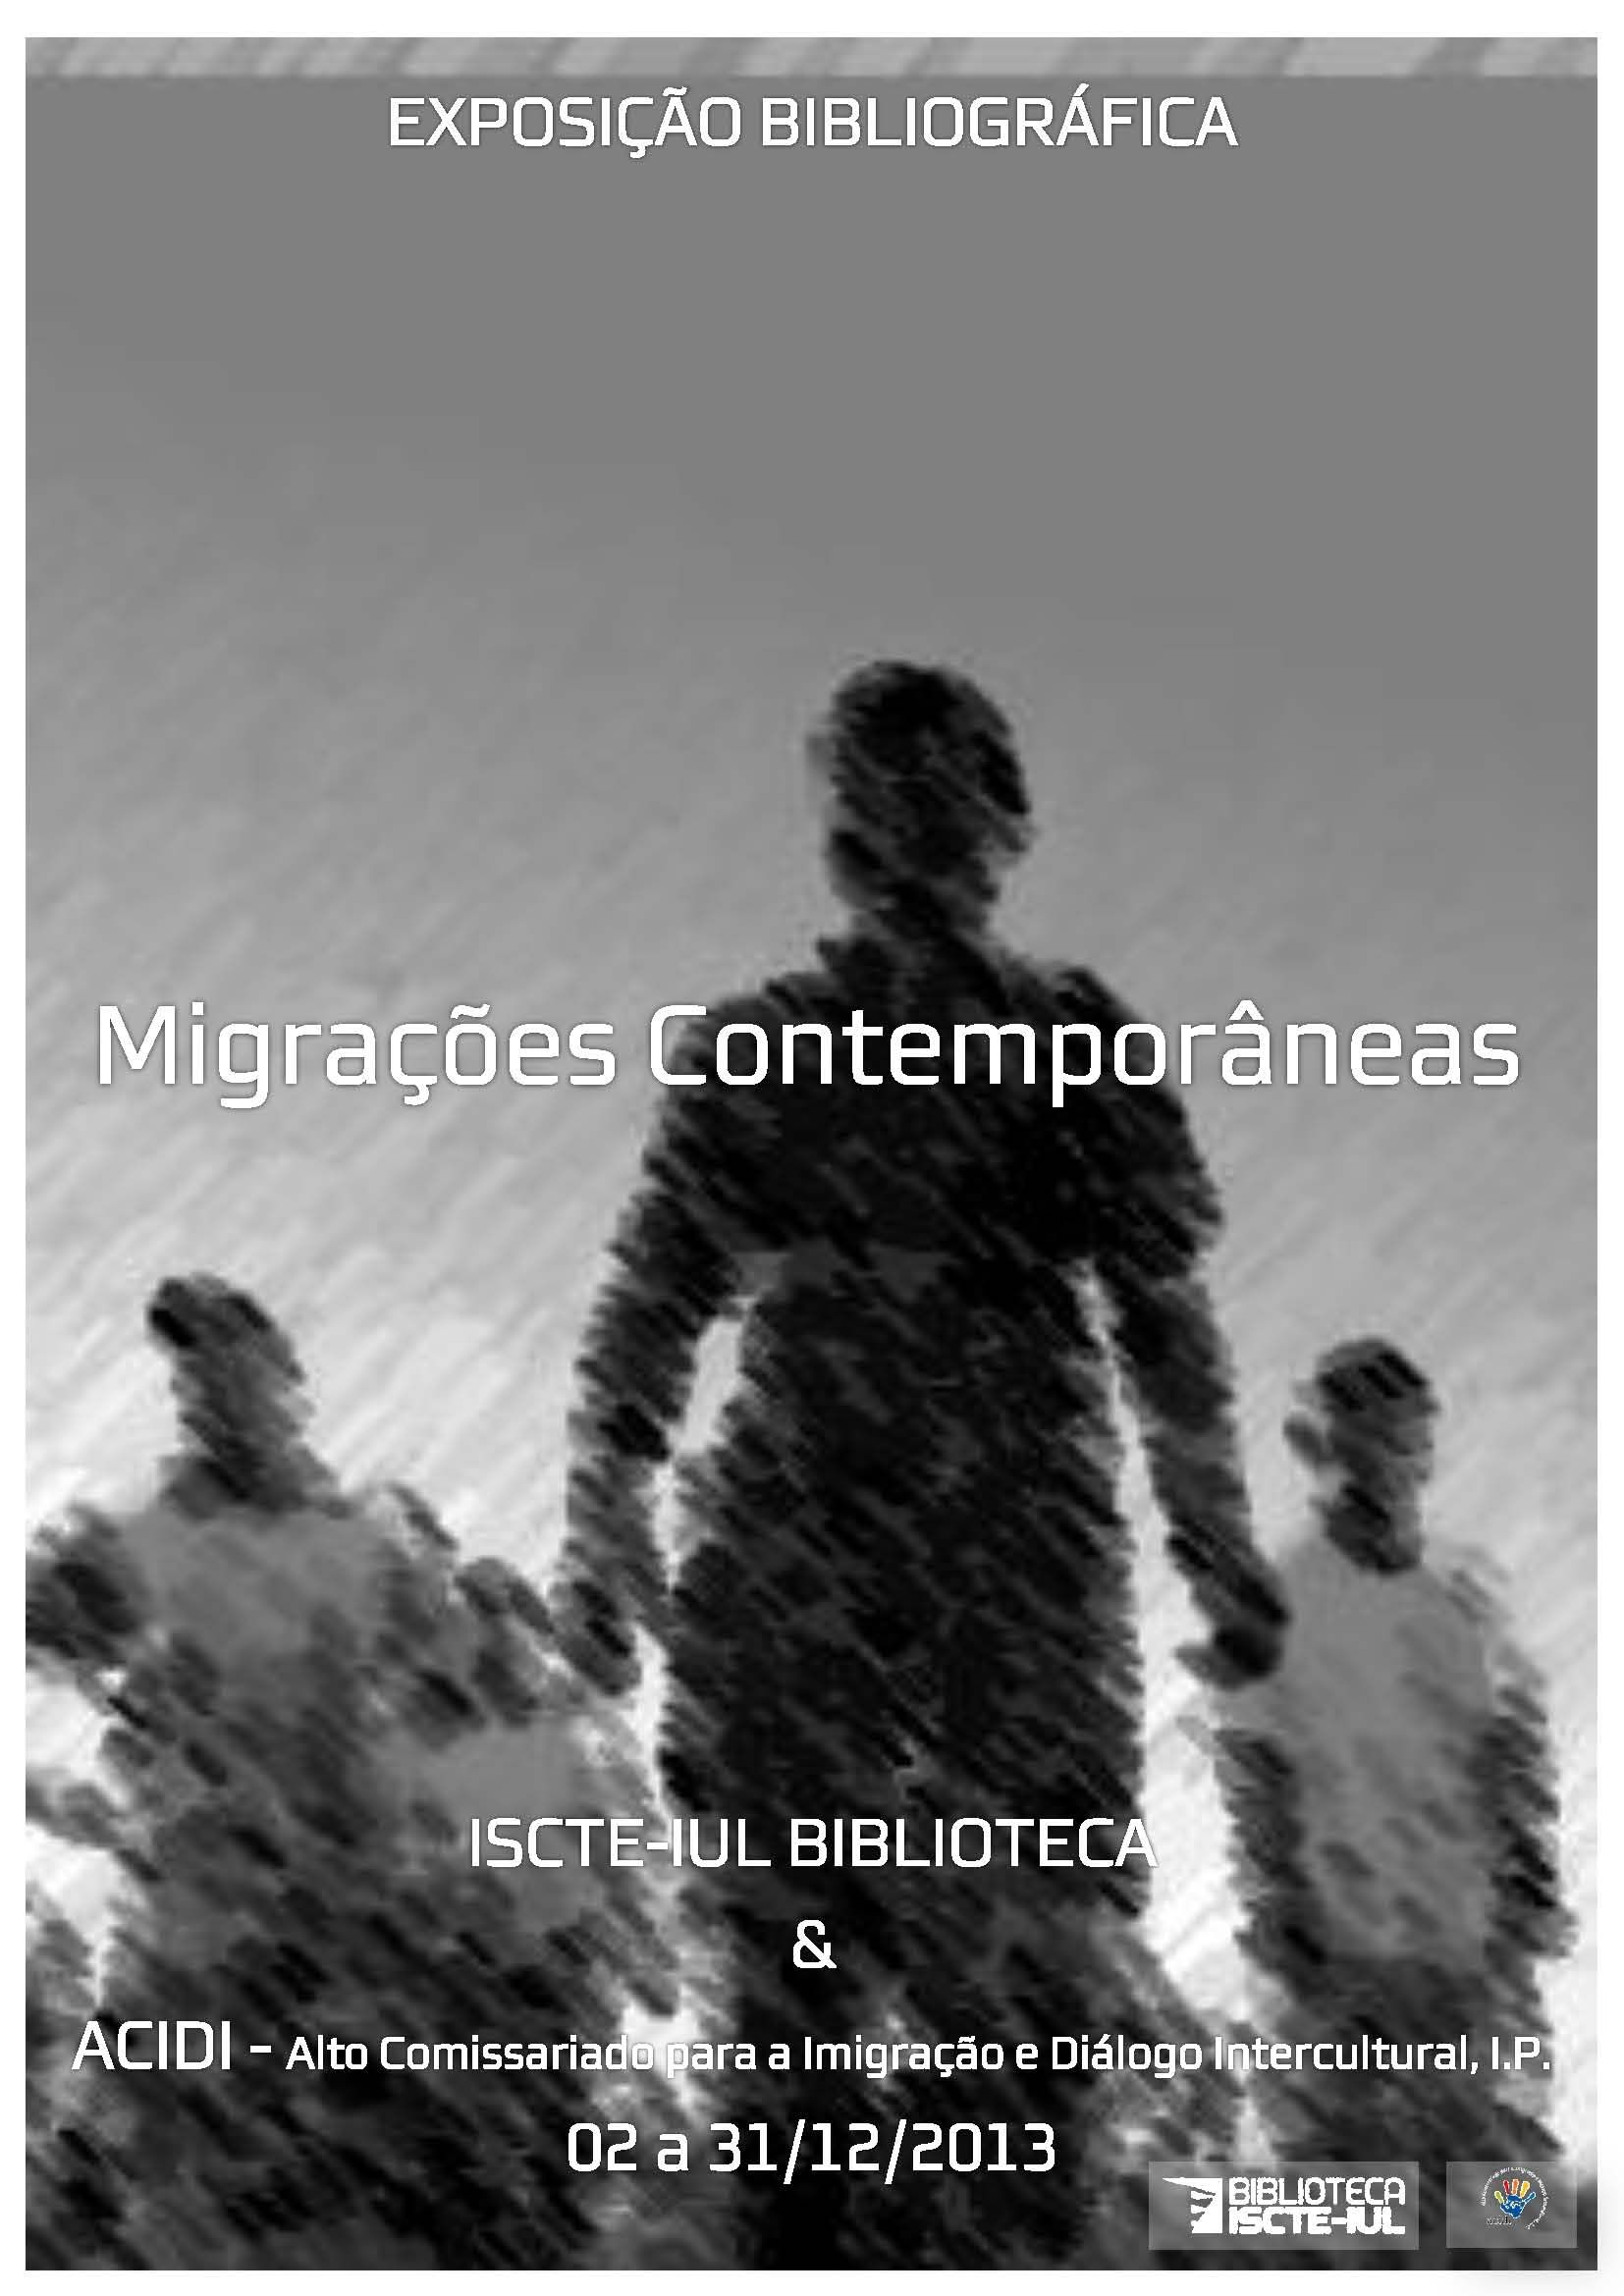 Cartaz da Exposição Bibliográfica (dezembro 2013) – Migrações contemporâneas